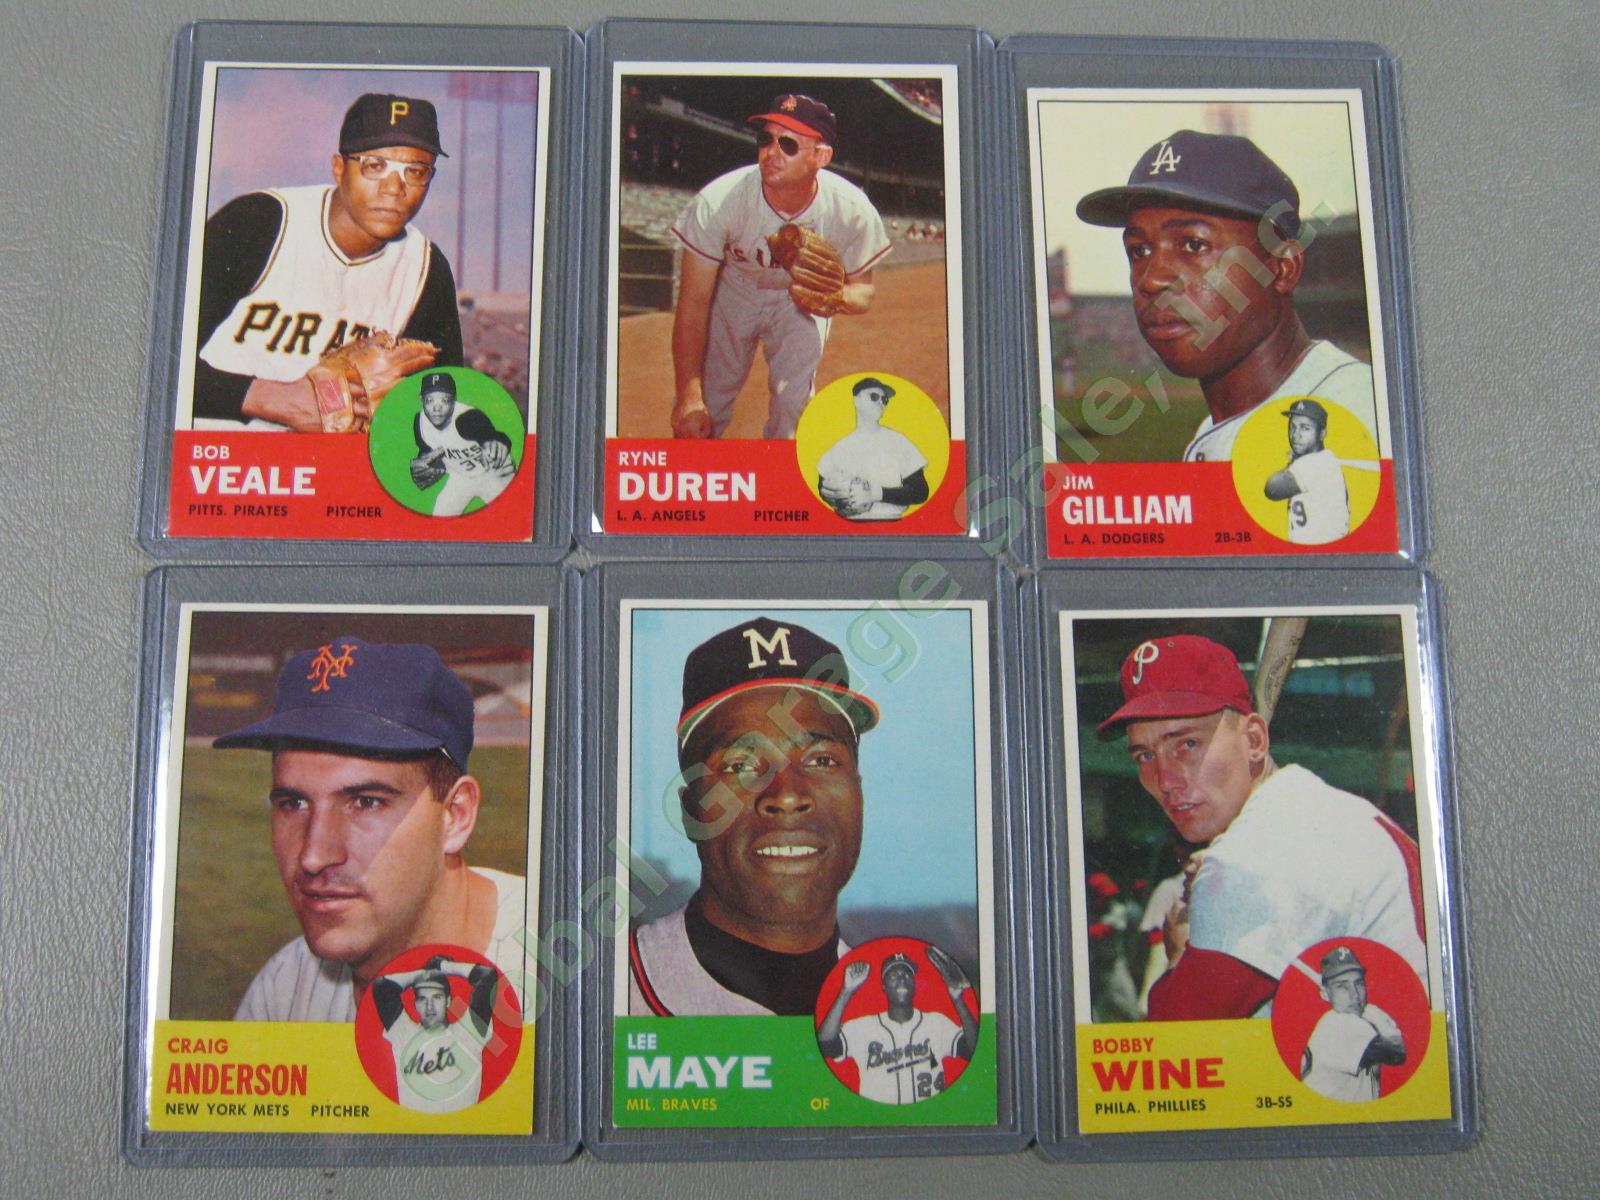 160 Vtg 1961 1962 1963 Topps Baseball Card Lot w/ RBI Home Run Leaders + VG-EX 22